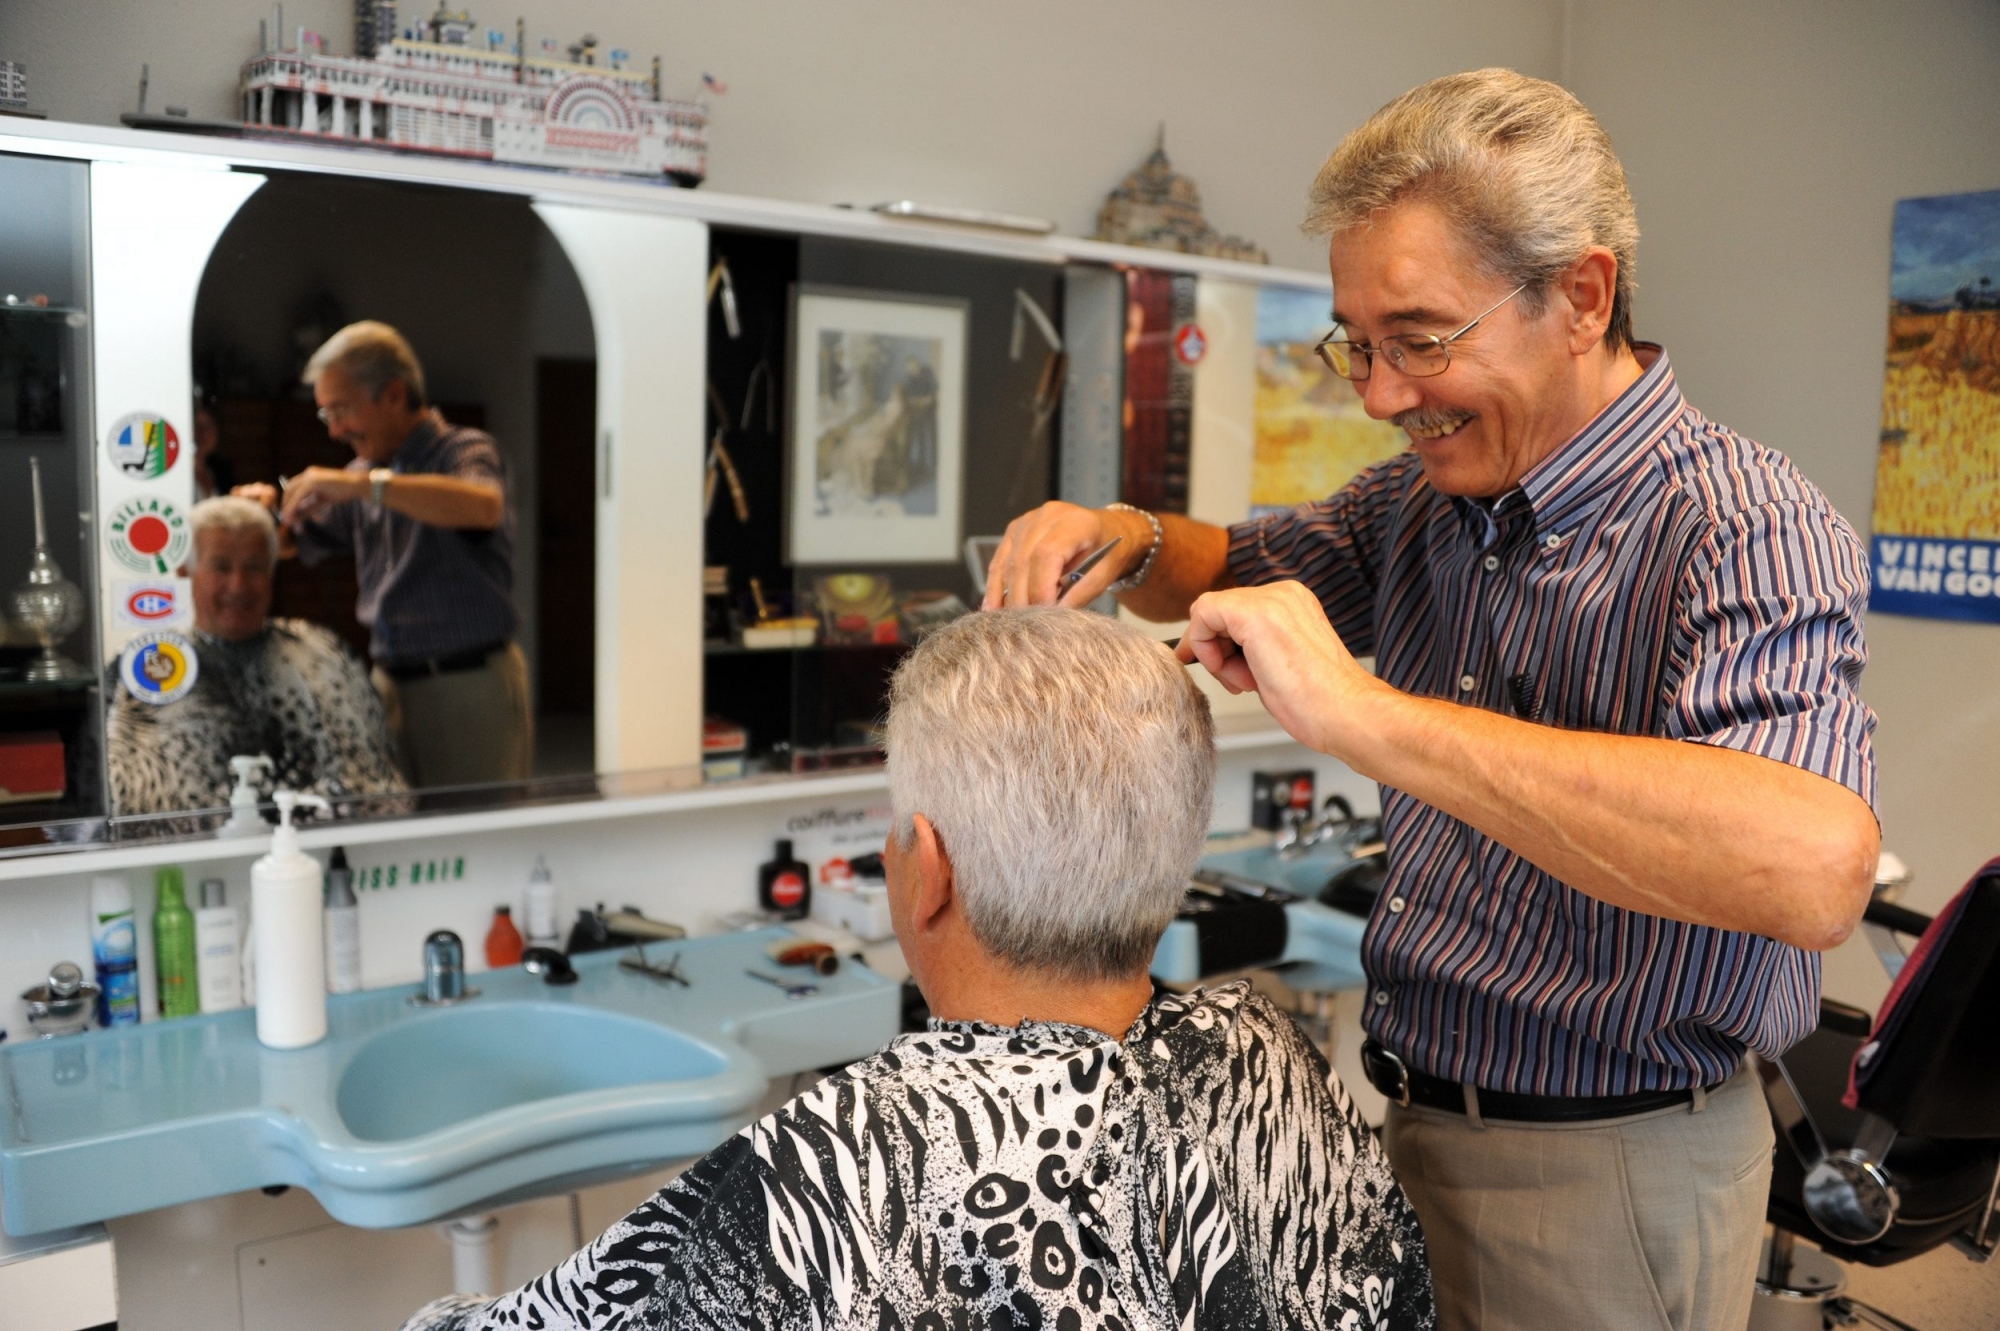 Antonio Toscani coiffeur pour hommes.

LA CHAUX-DE-FONDS 19 08 2011
PHOTO: CHRISTIAN GALLEY COIFFEUR POUR HOMMES